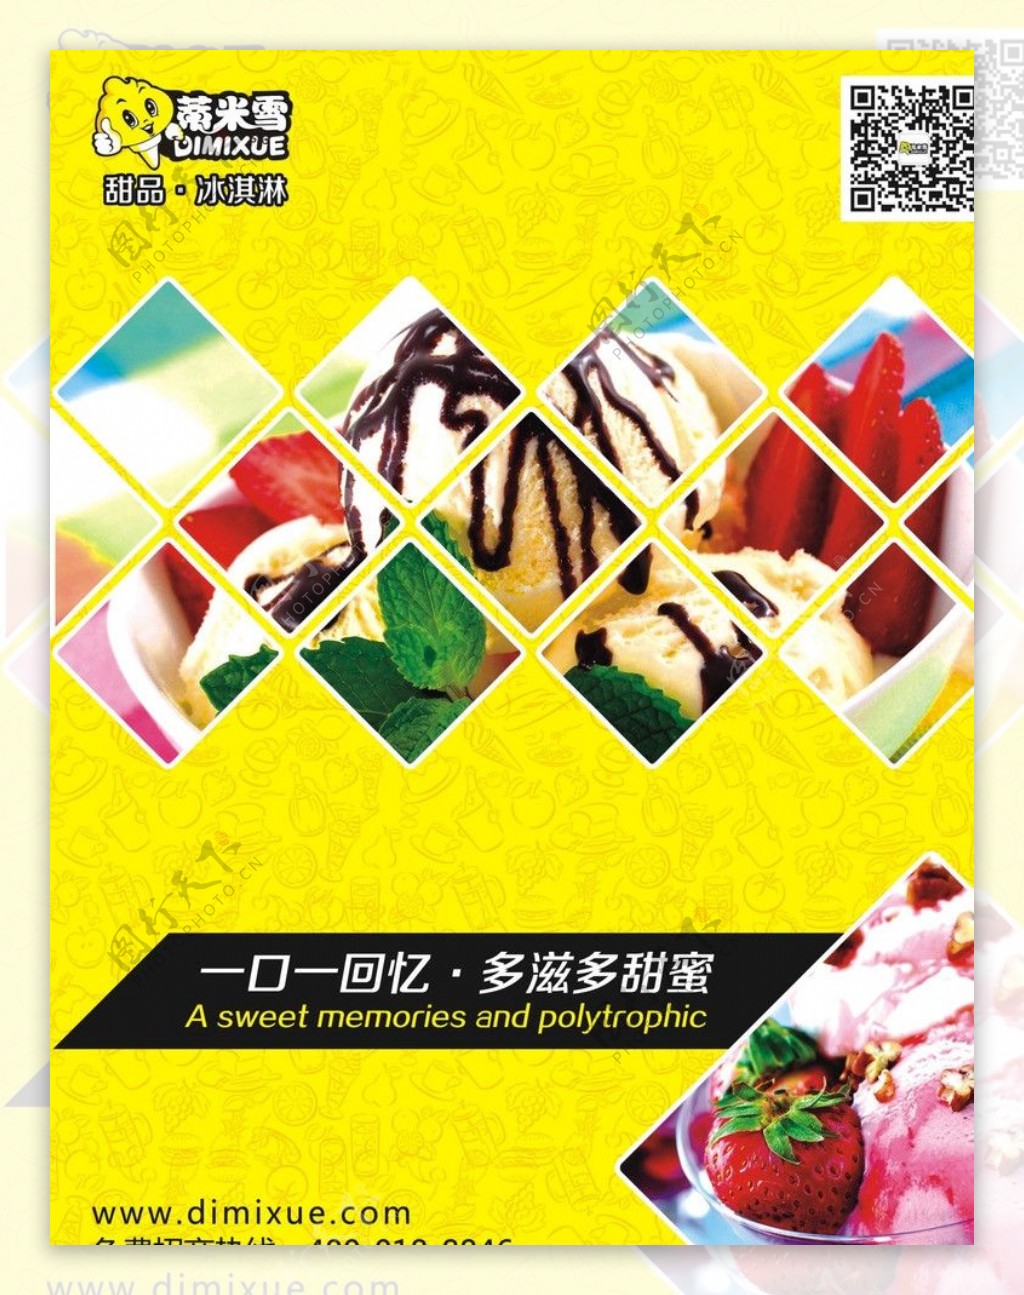 冰淇淋甜品海报图片